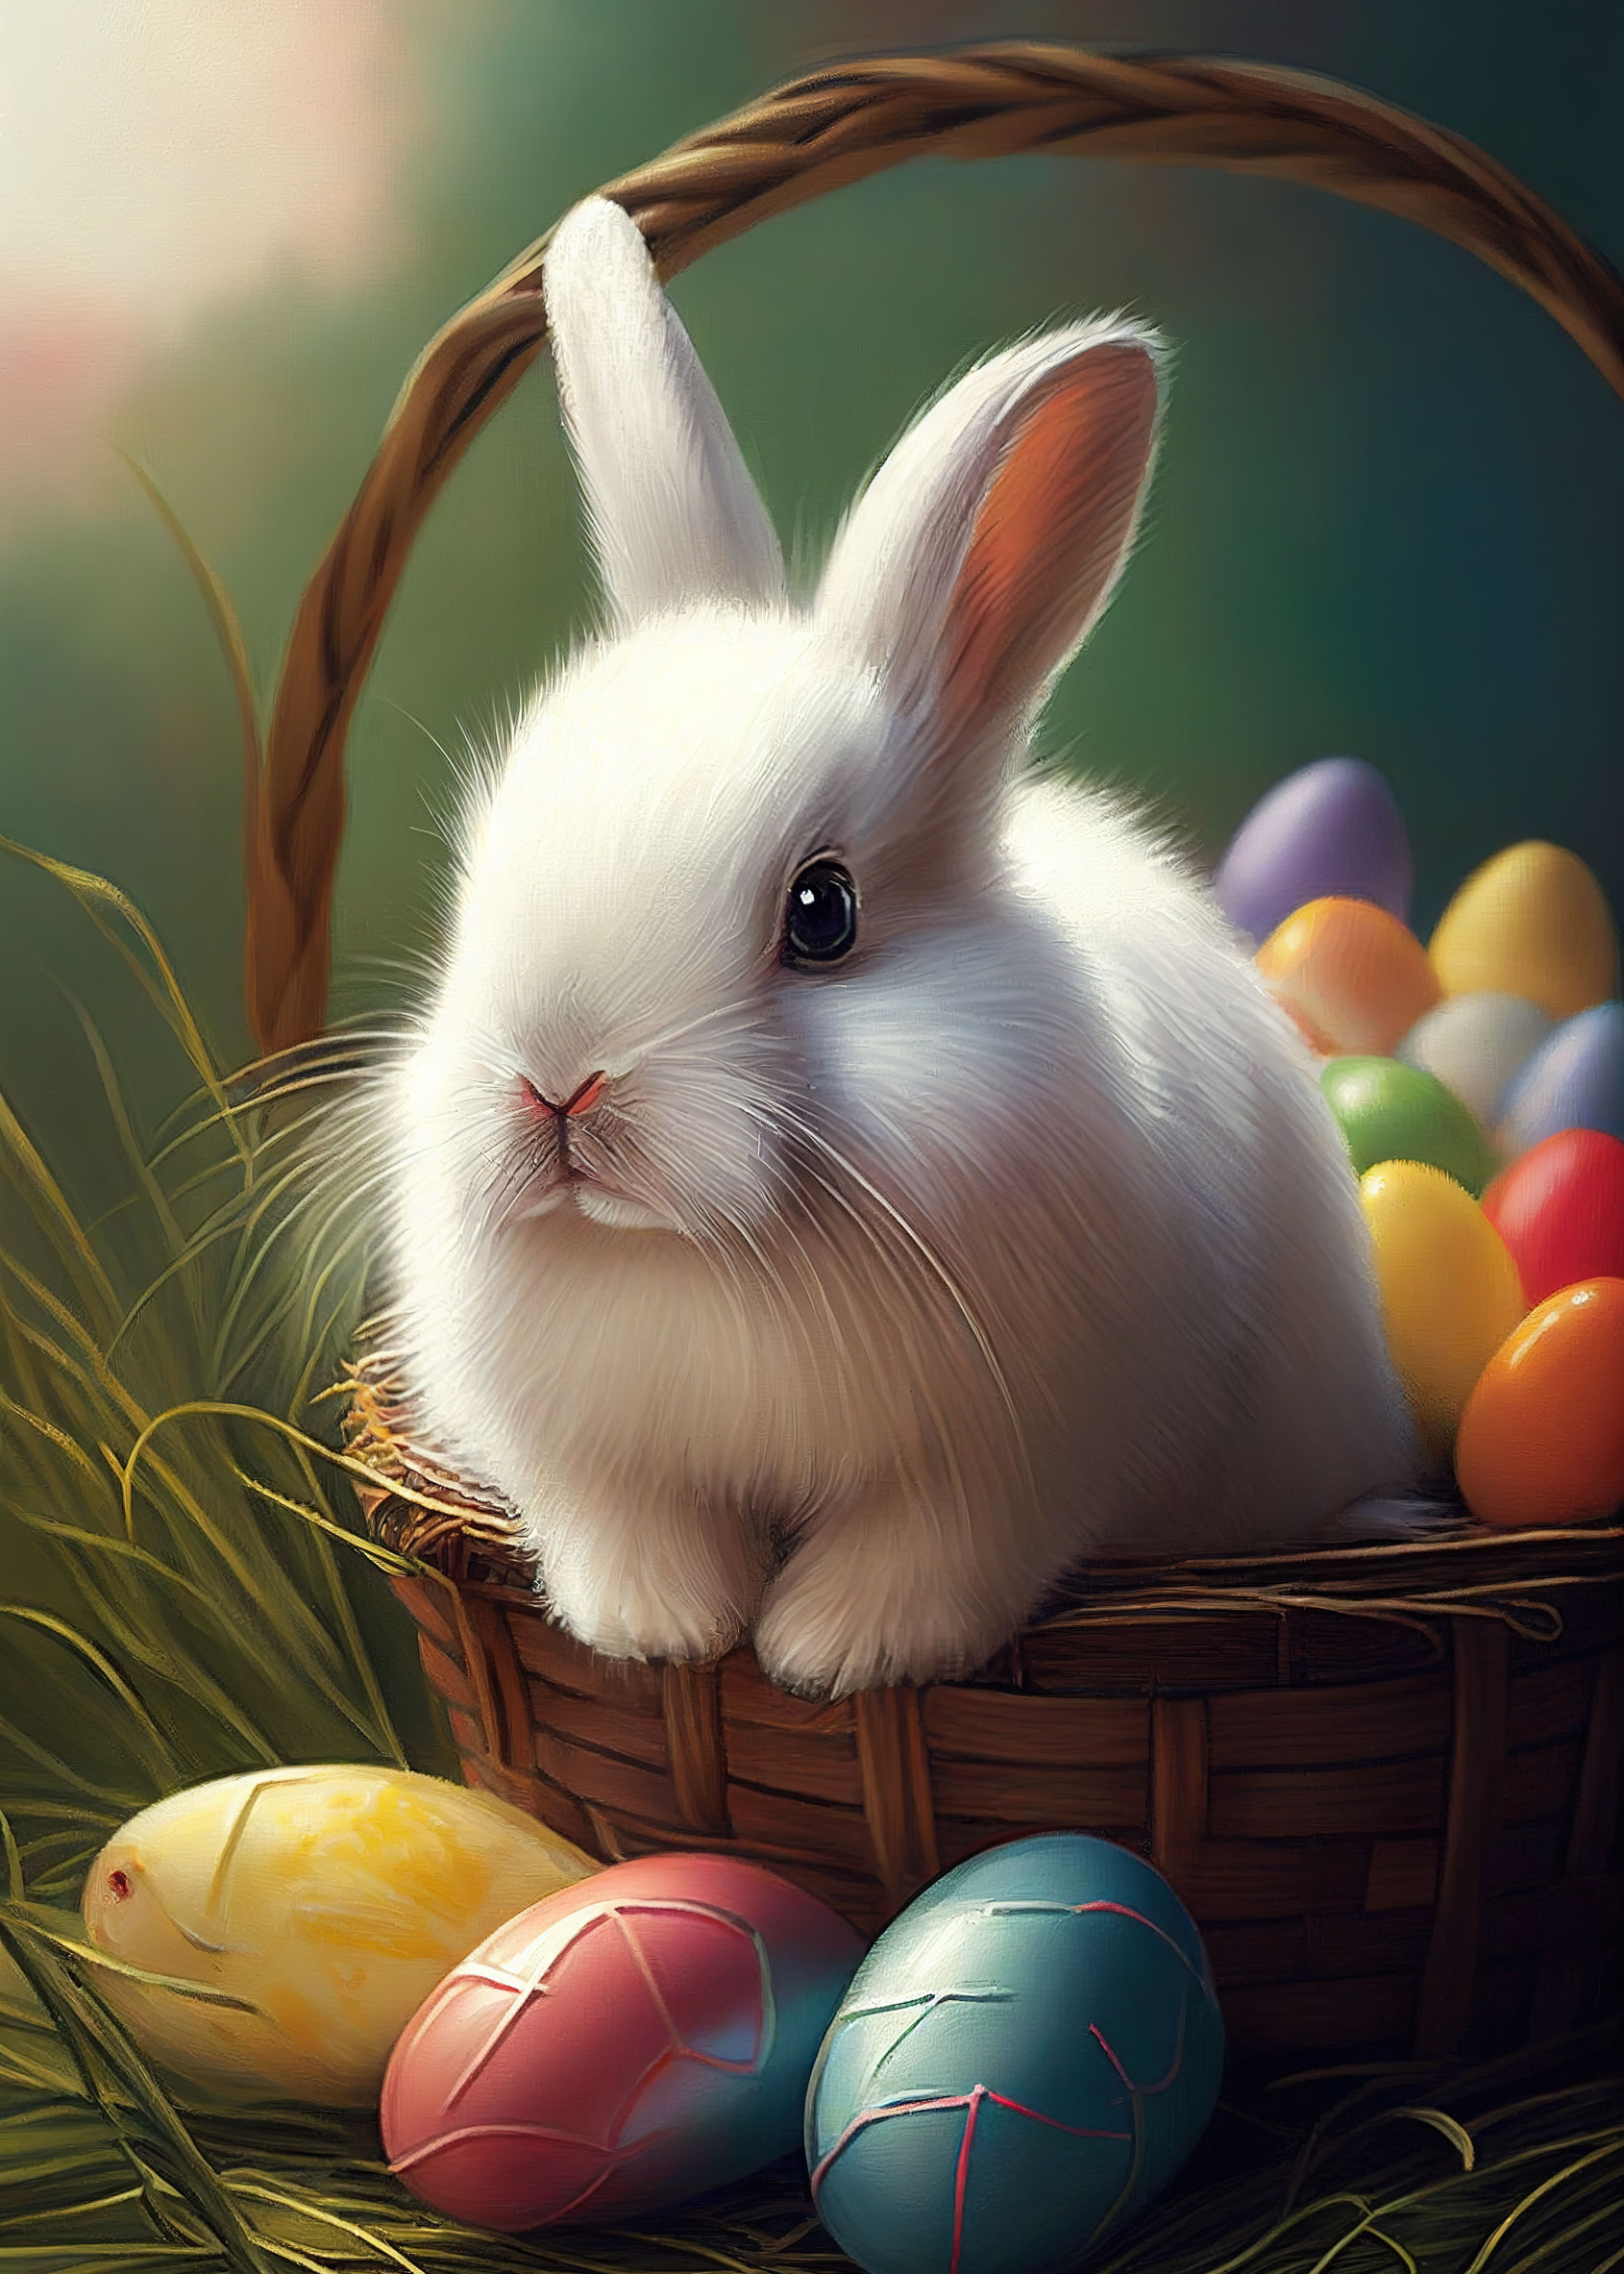 10000 Free Egg  Easter Images  Pixabay